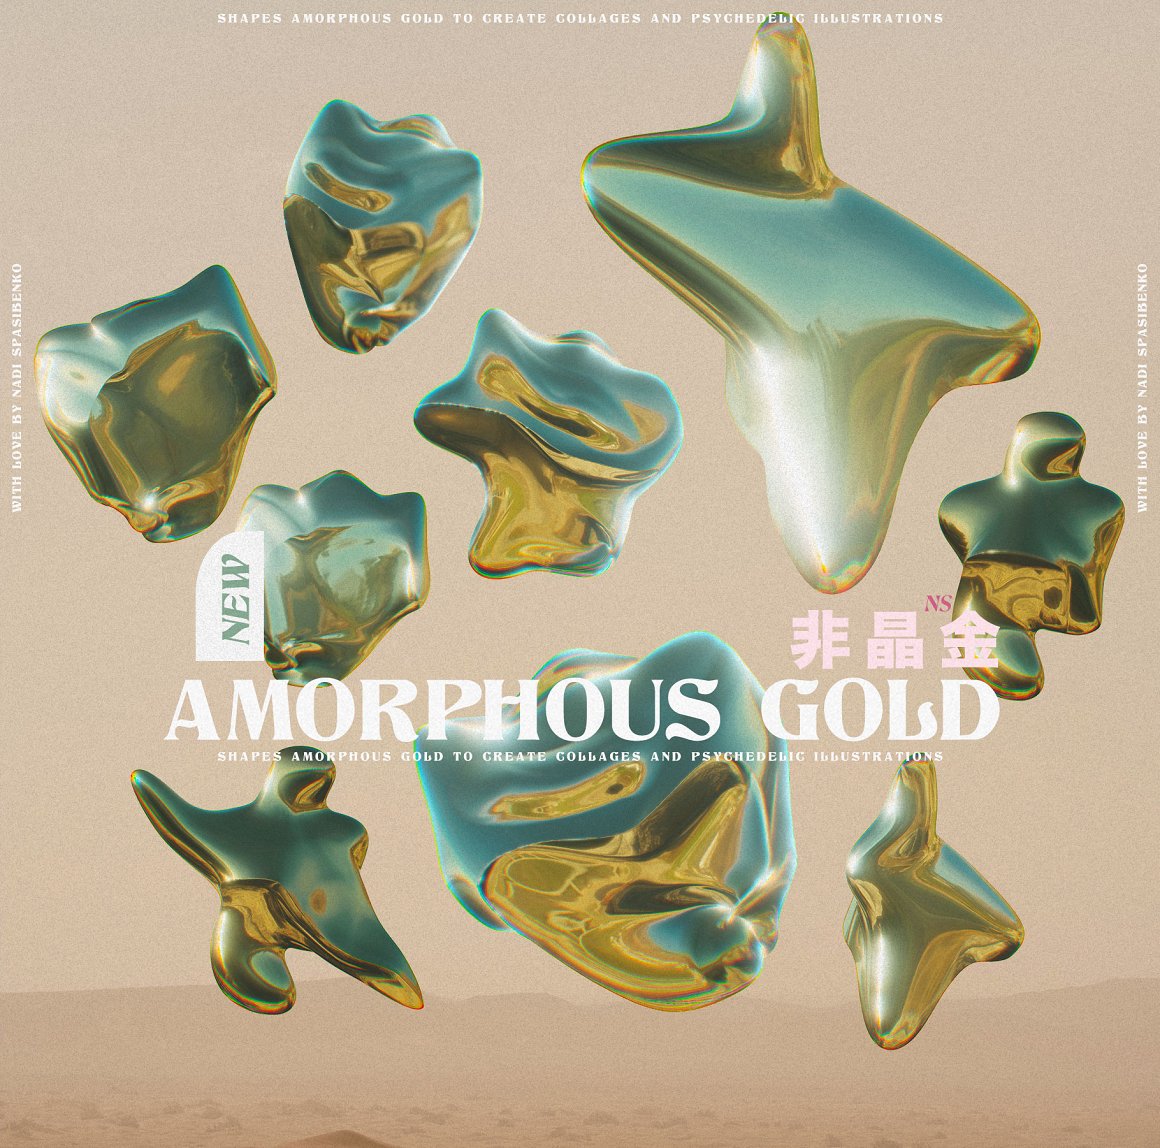 抽象艺术酸性液态3d迷幻黄金形状背景海报 Amorphous Liquid Gold（5304）图层云